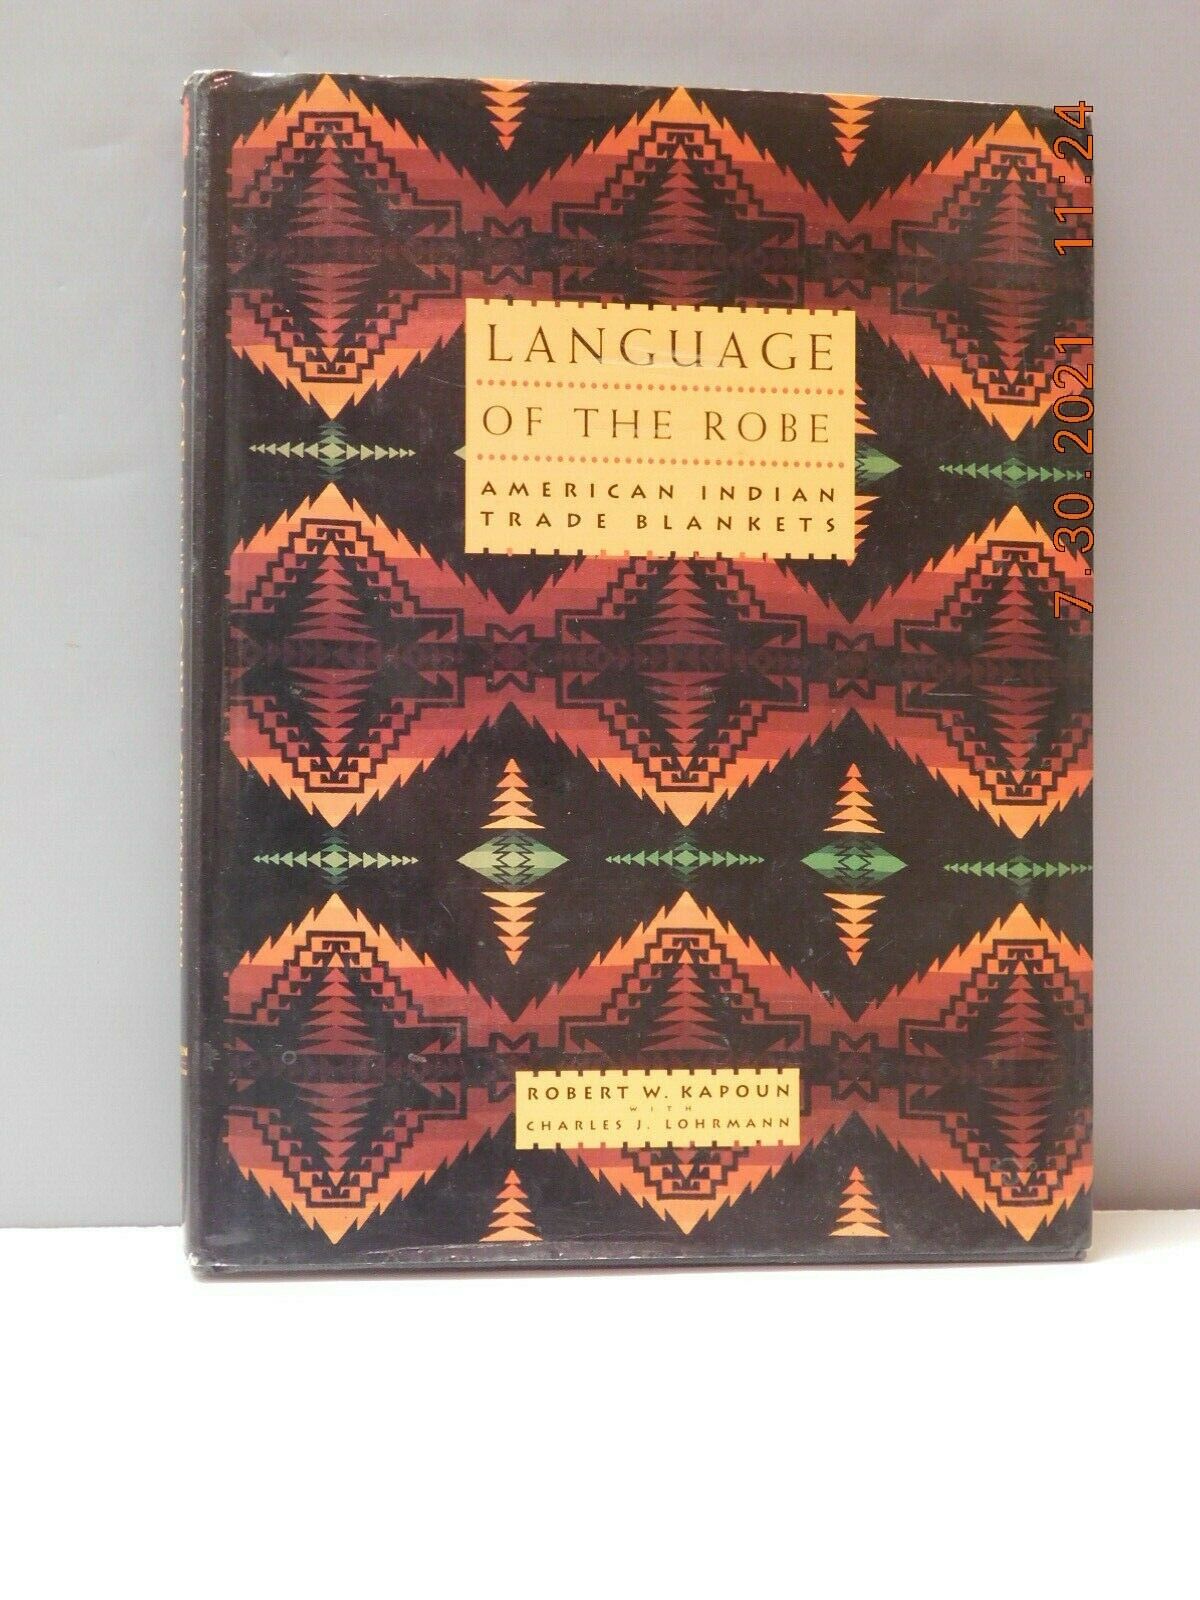 Language Of The Robe By Robert Kapoun